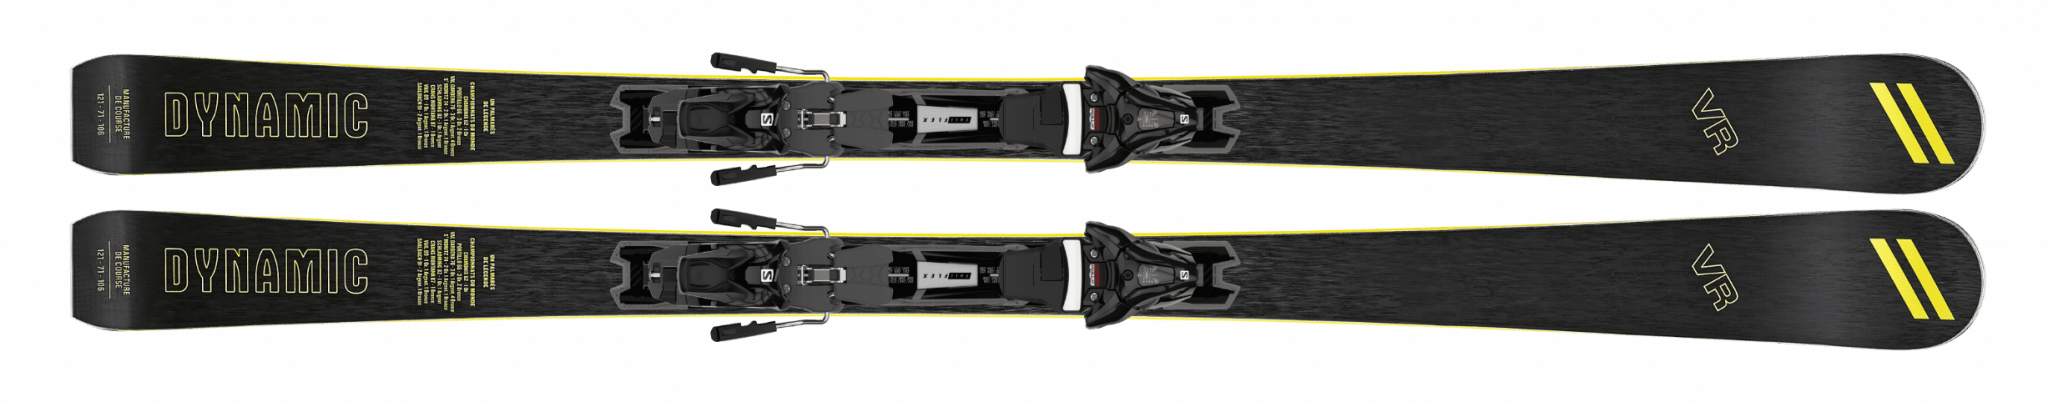 Ski Dynamic VR All Piste black Z12 GW binding